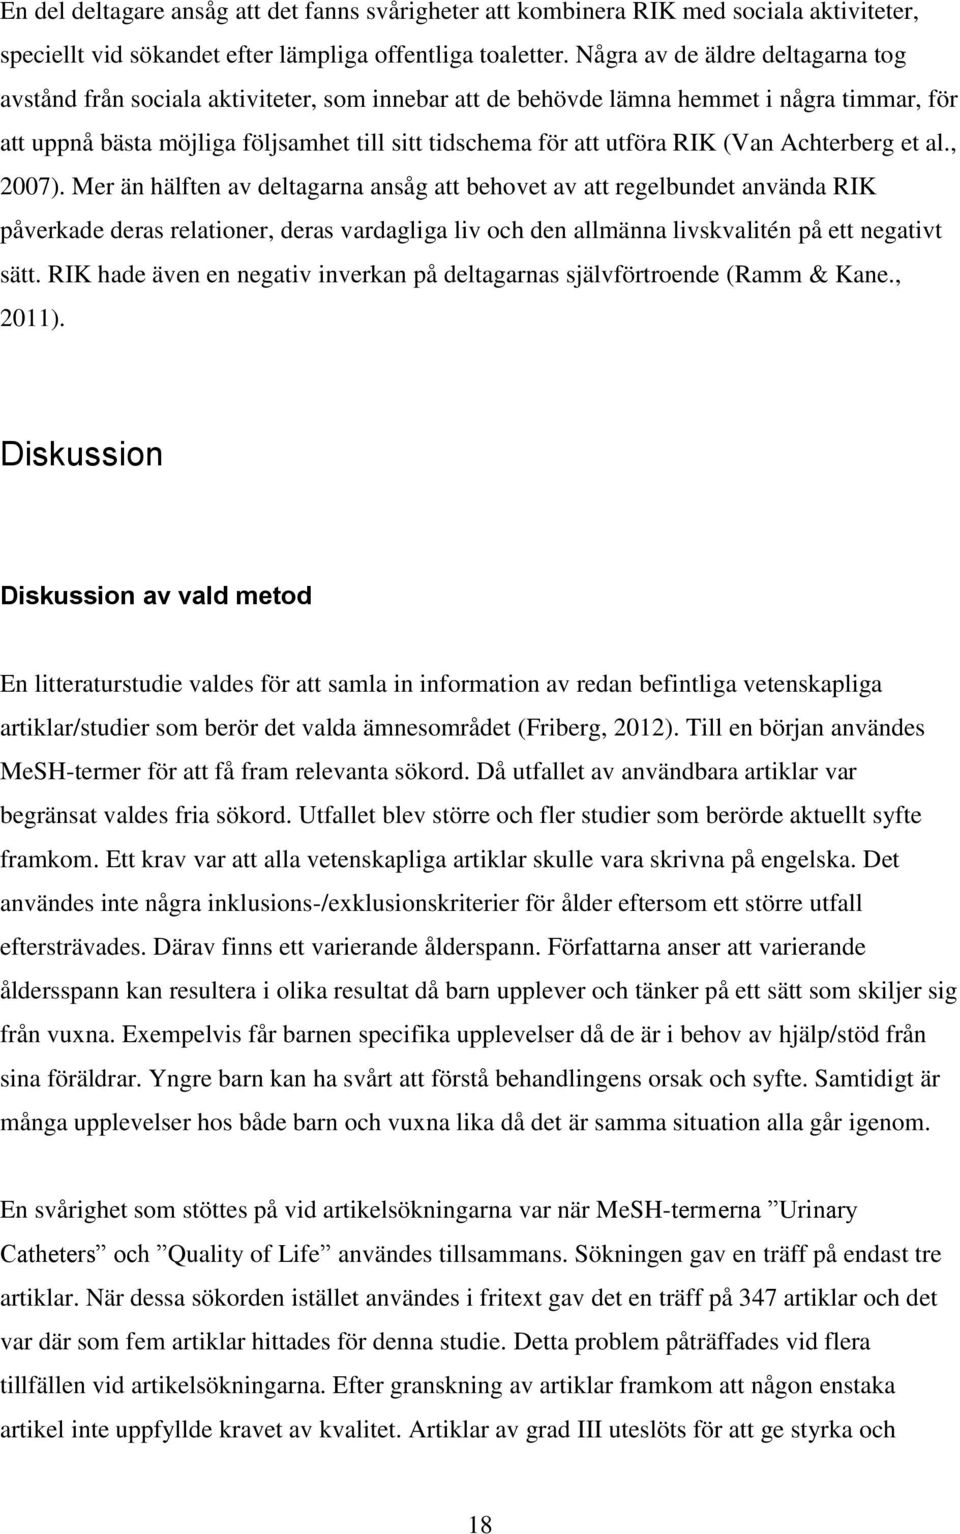 RIK (Van Achterberg et al., 2007).